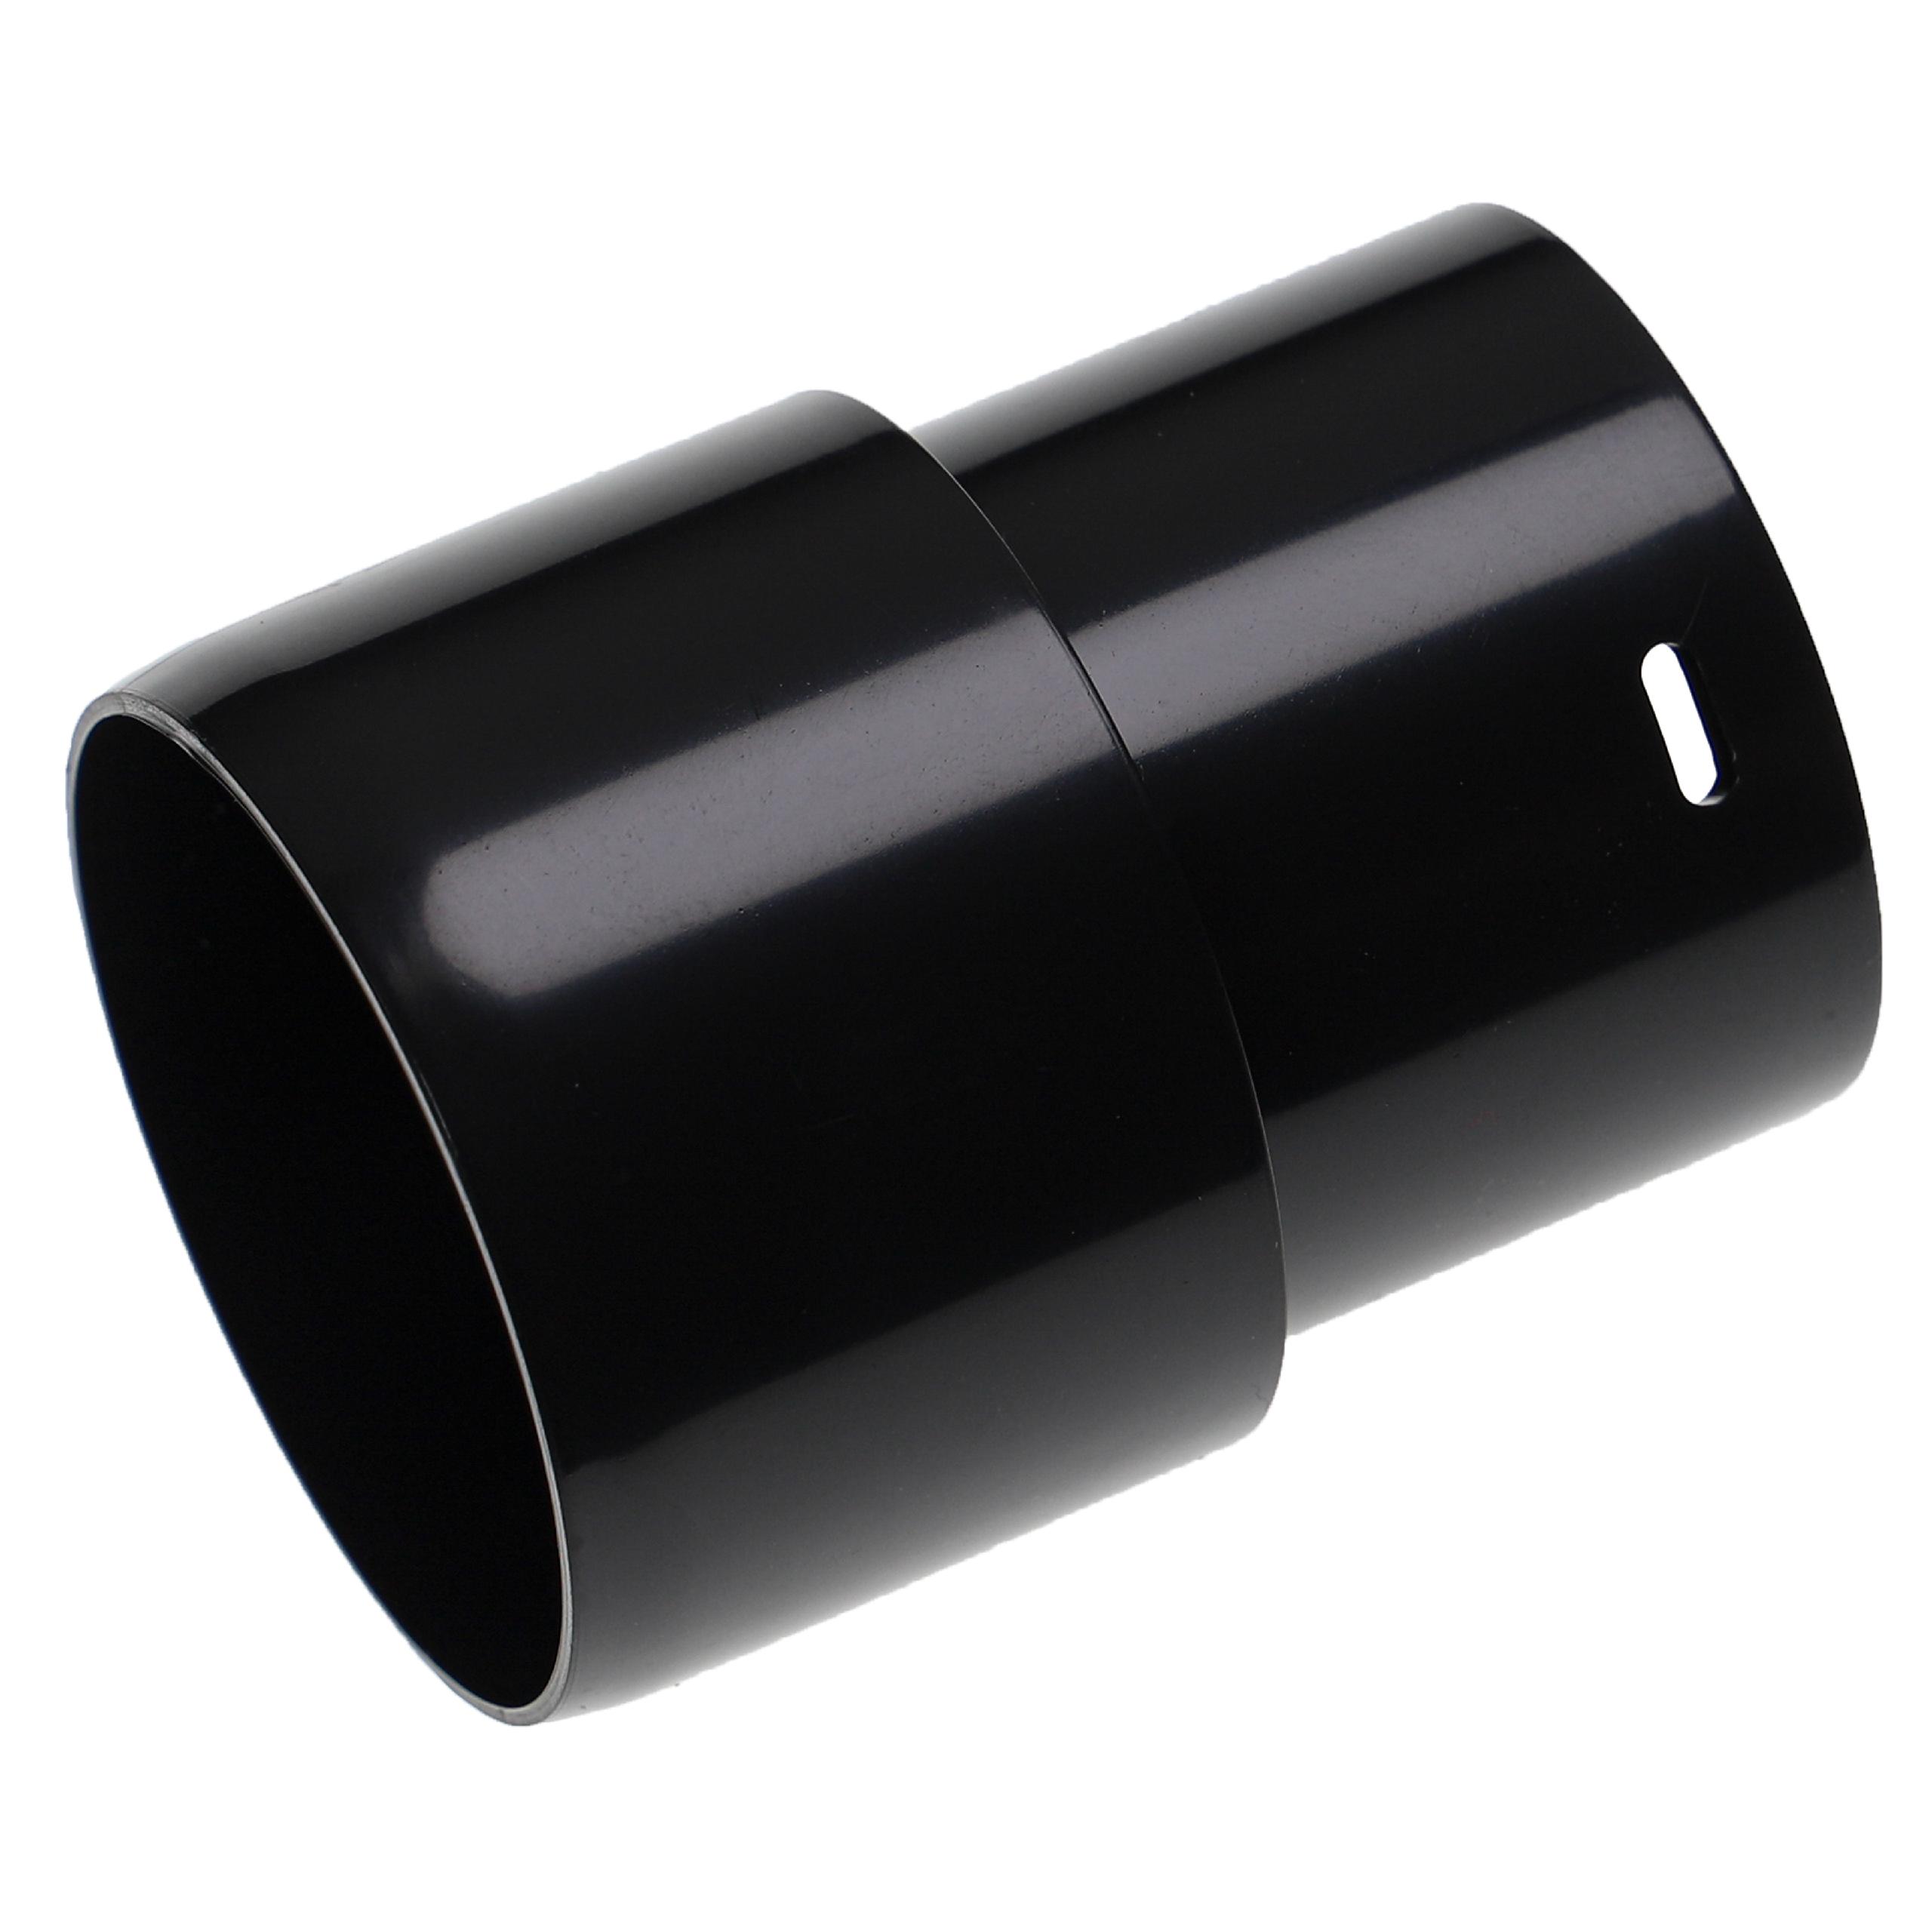 Adaptateur de tuyau pour aspirateur Moulinex et autres - 58 mm rond, à clic